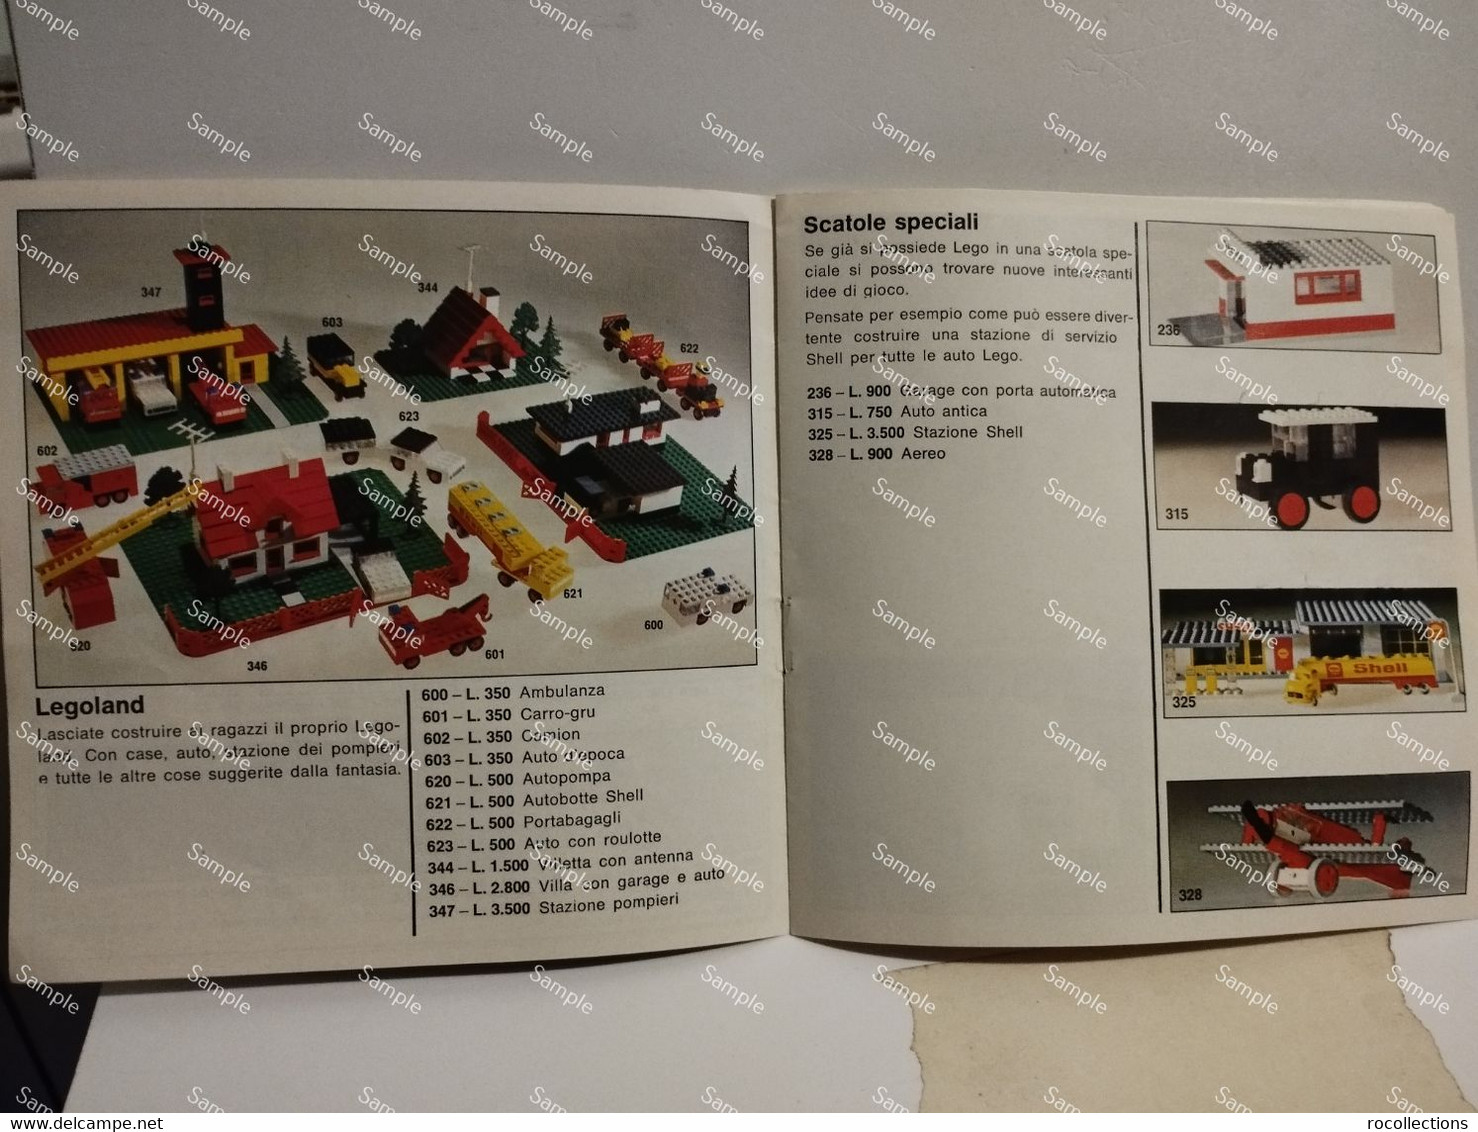 Italy Italia LEGO Little Catalog ASSORTIMENTO LEGO CON TUTTE LE NOVITA' DELL'ANNO. Printed In Germany - Catalogi